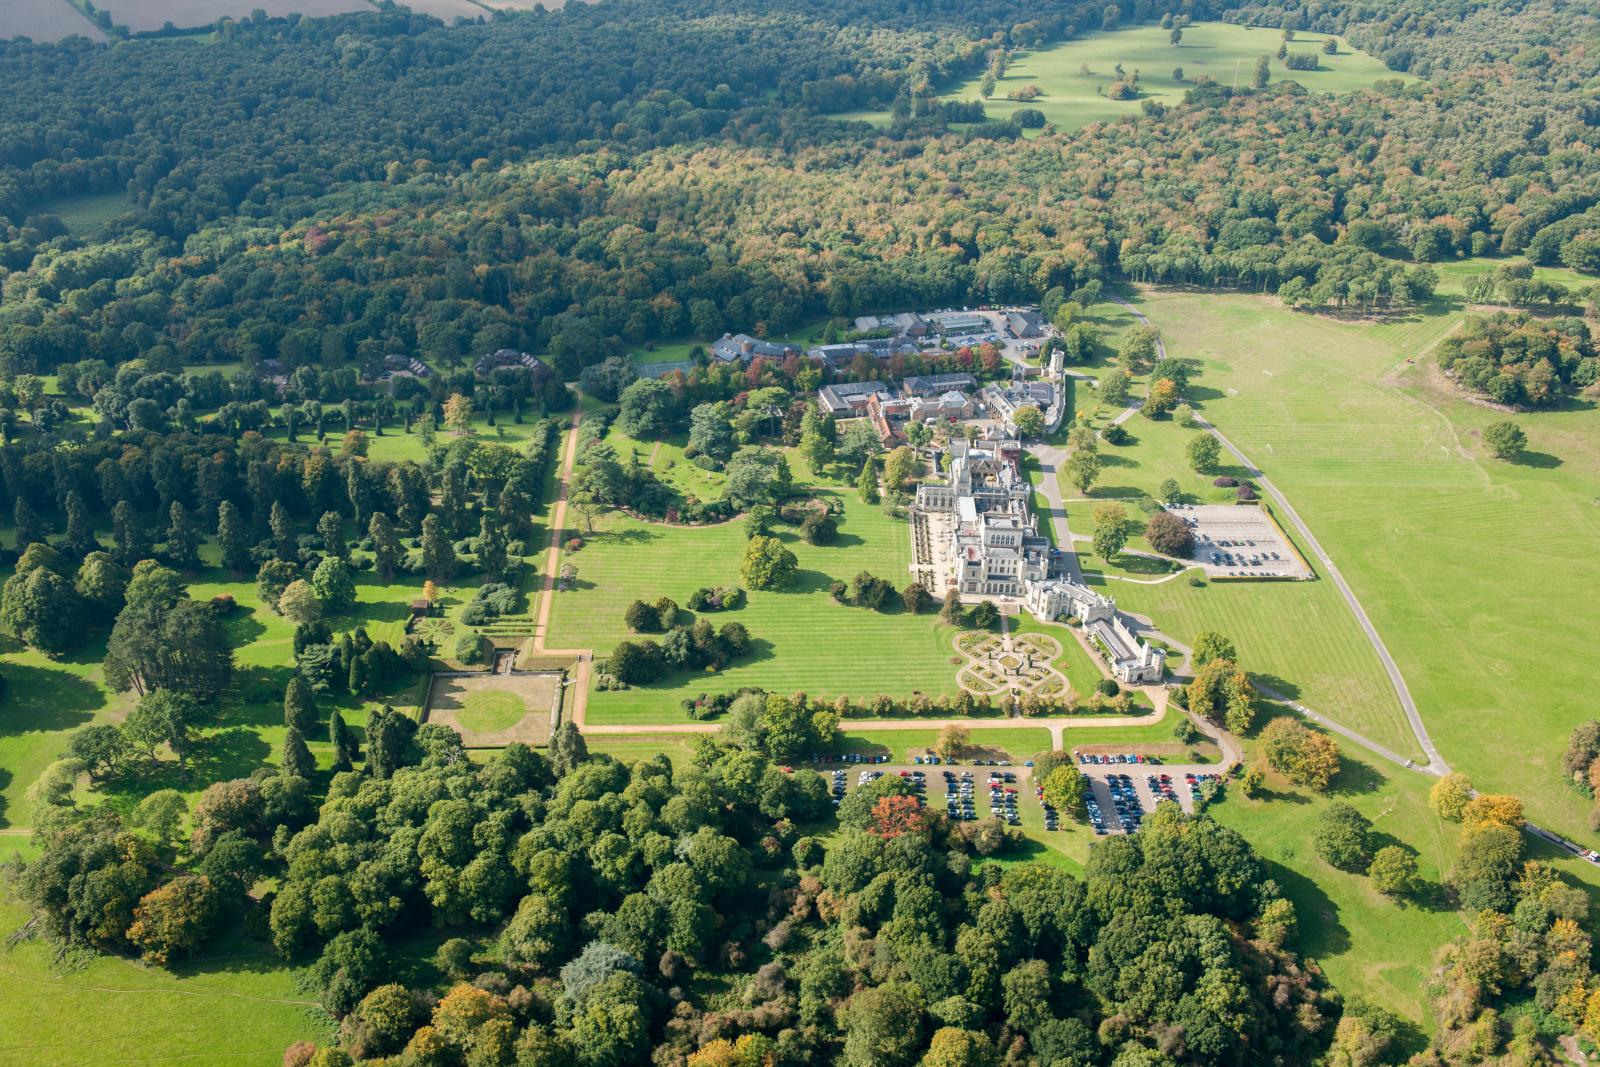 Aerial view of Ashridge House and parkland